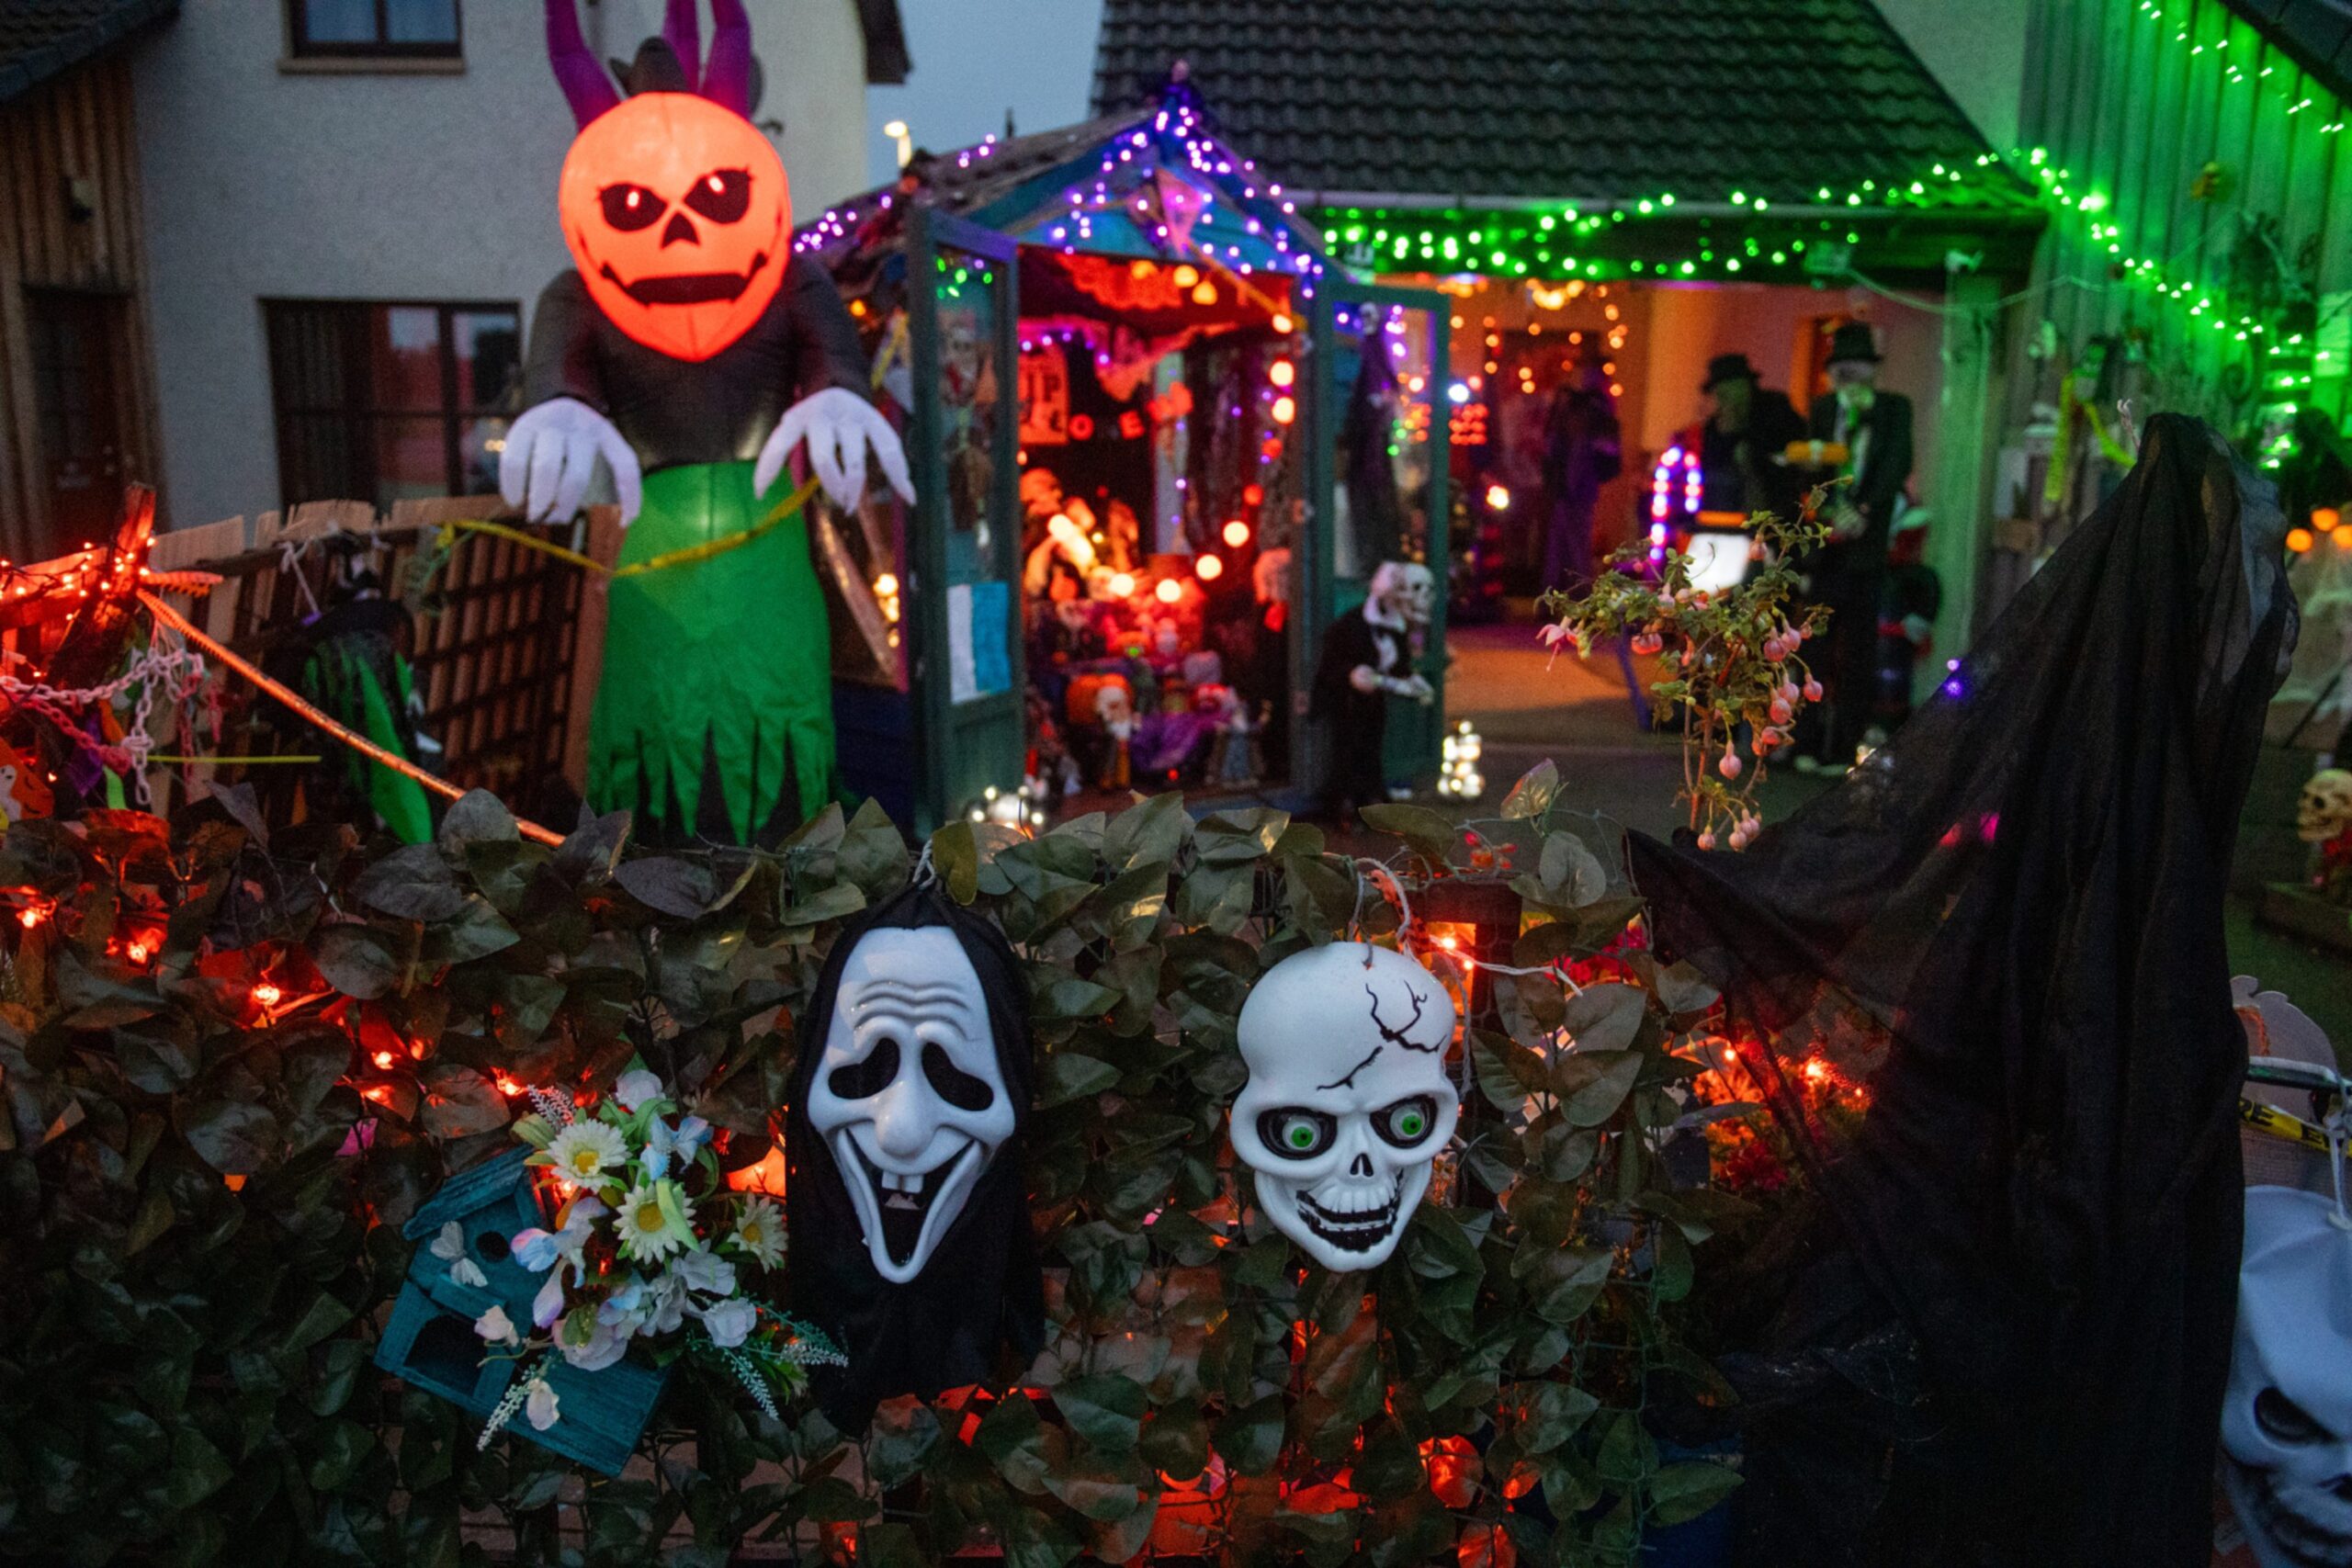 Skeletons and pumpkins in back garden. 